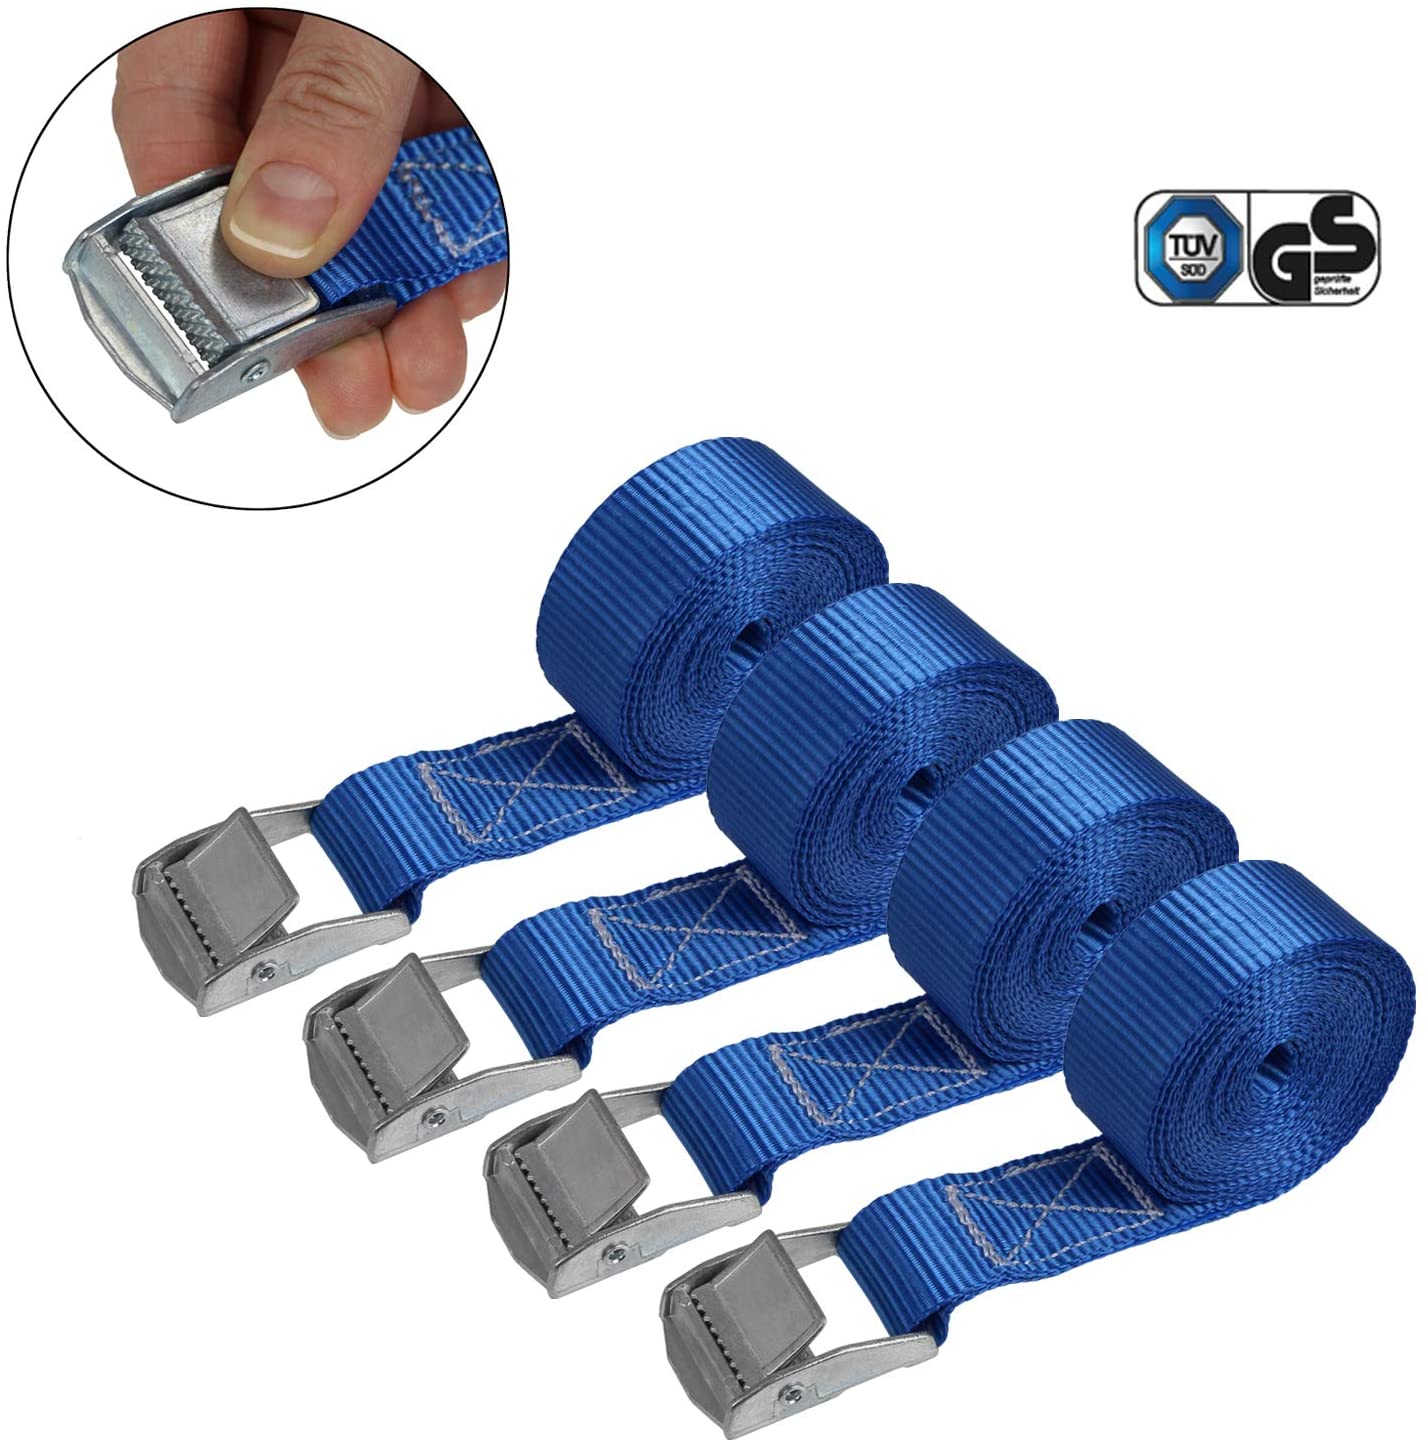 Cinghia di fissaggio Cinghie di tensione - blu - 2,5m 4m 6m - diverse quantità, sicura del carico resistenza fino a 250 kg DIN EN 12195-2, 4 pezzi 2.5 cm x 2.5 m